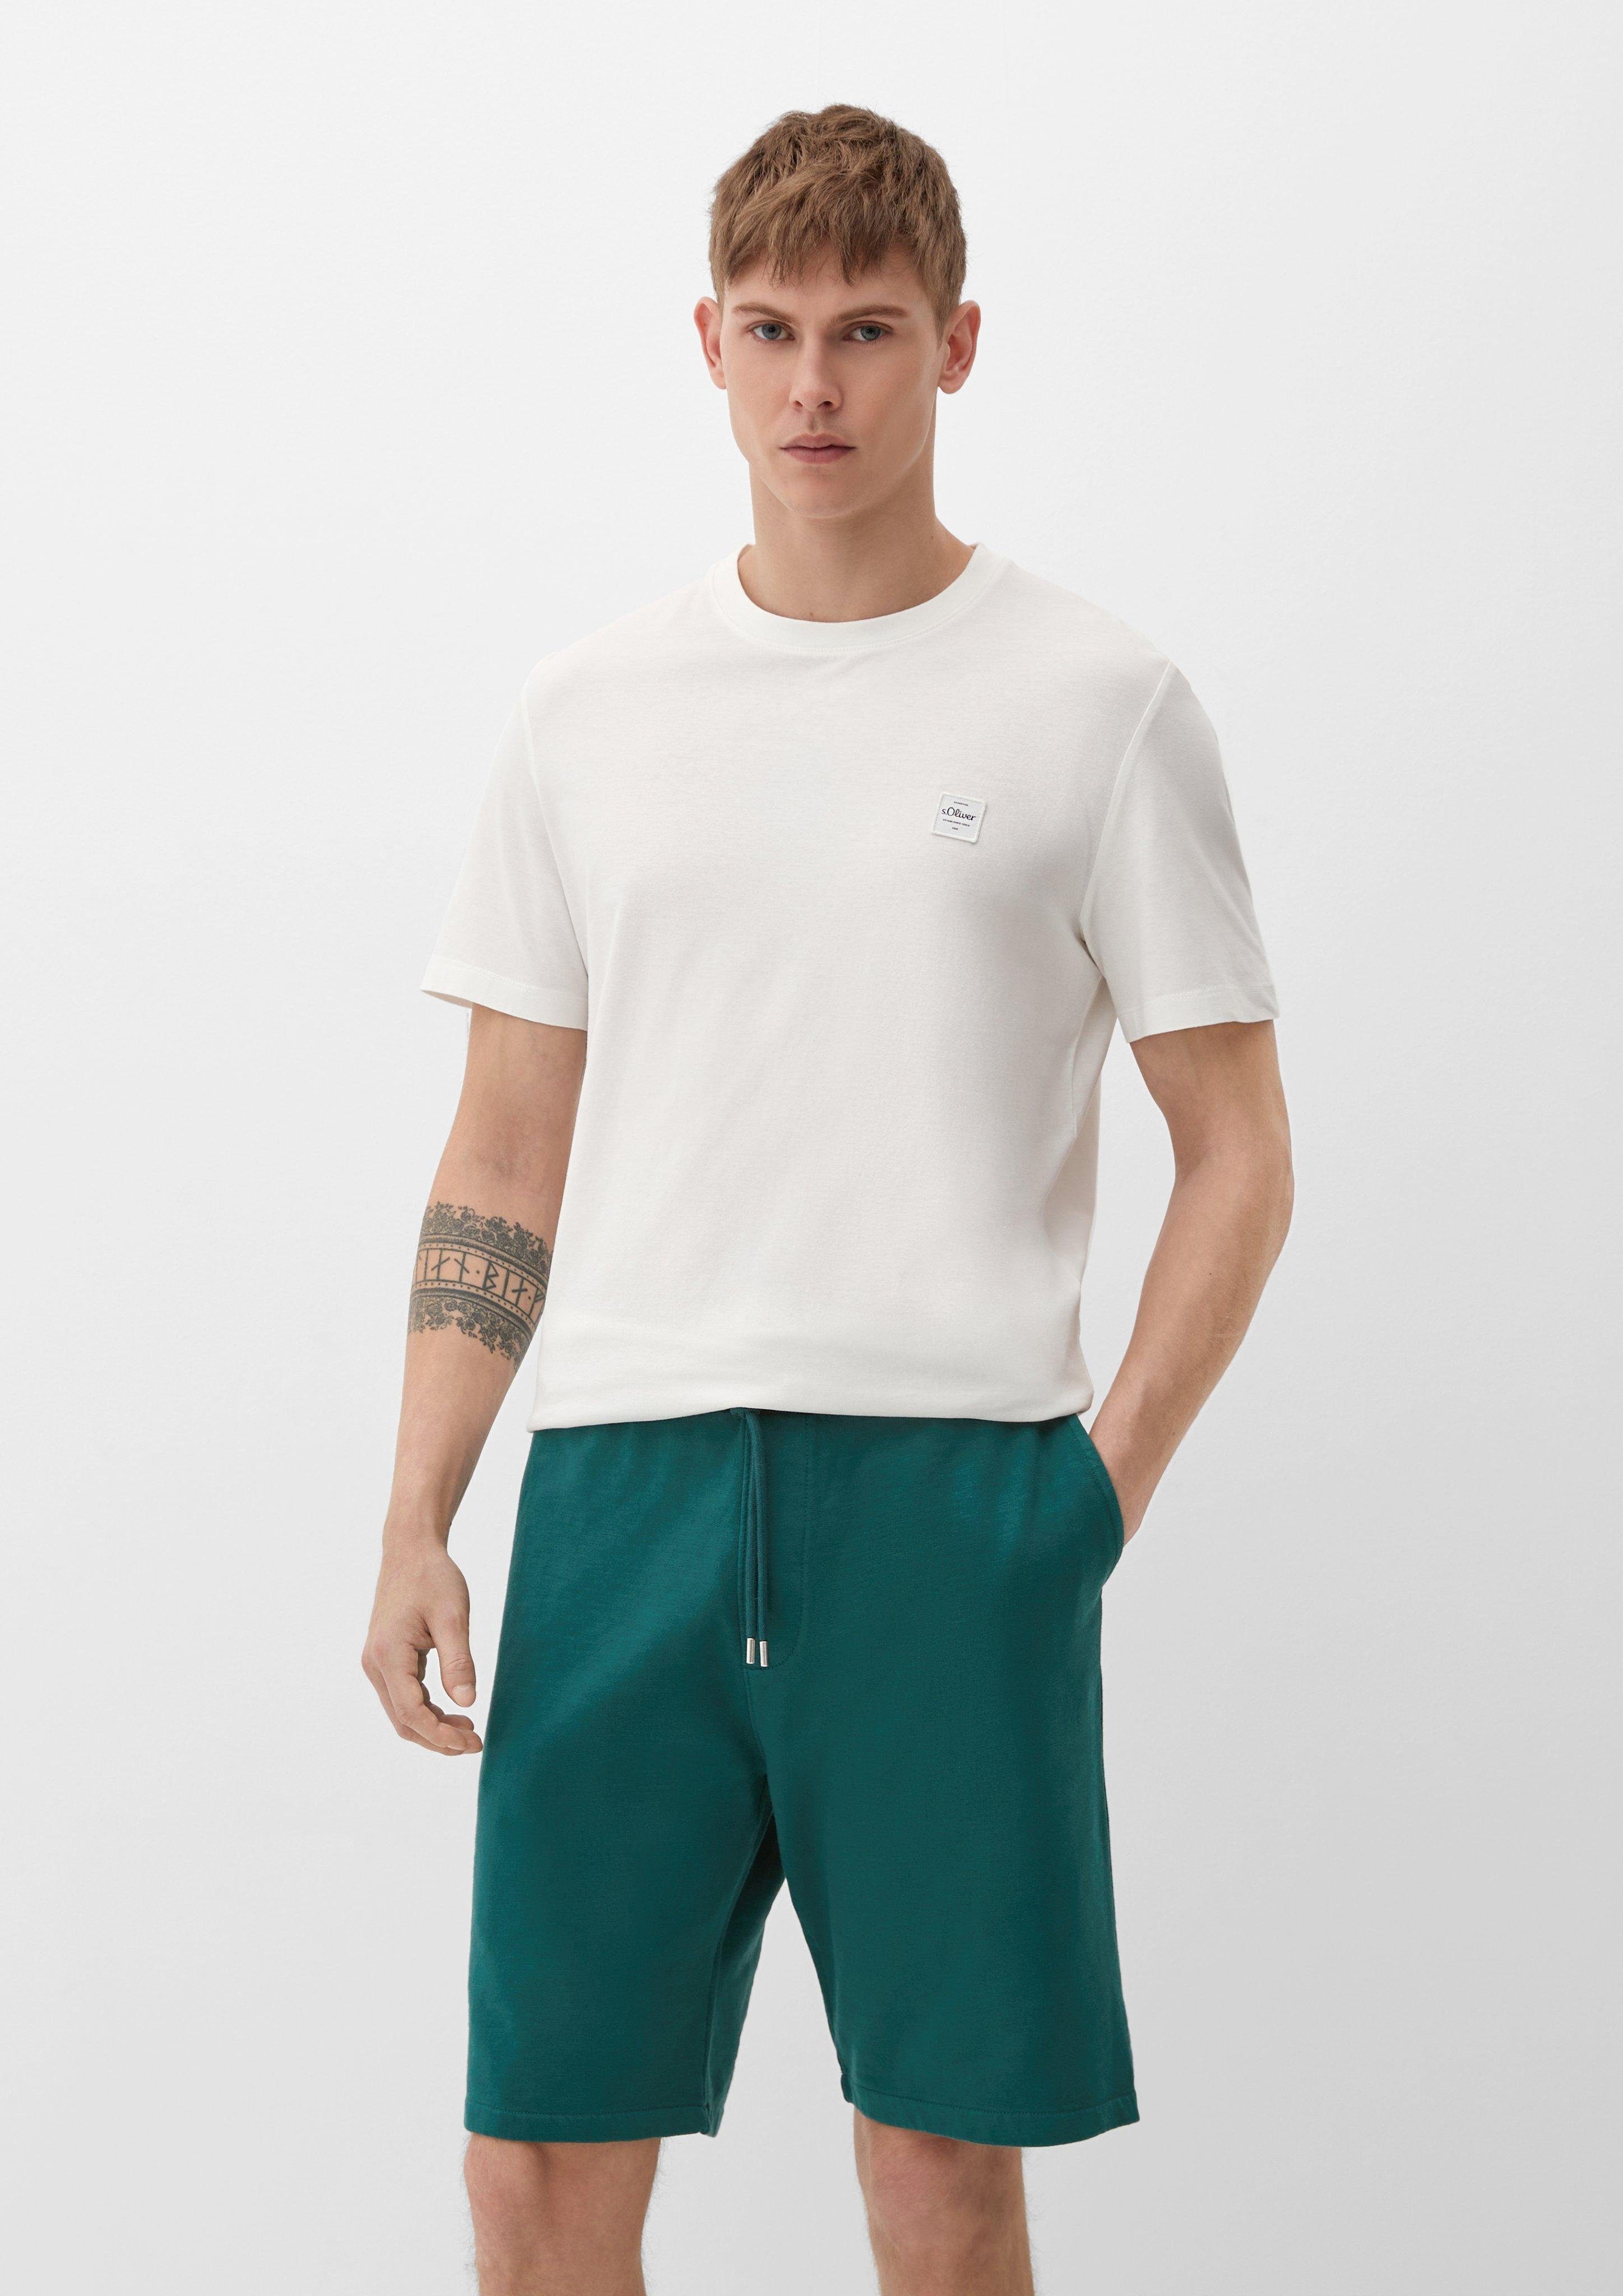 s.Oliver Bermudas Relaxed: Sweatpants mit Elastikbund Durchzugkordel, Garment Dye, Label-Patch tannengrün